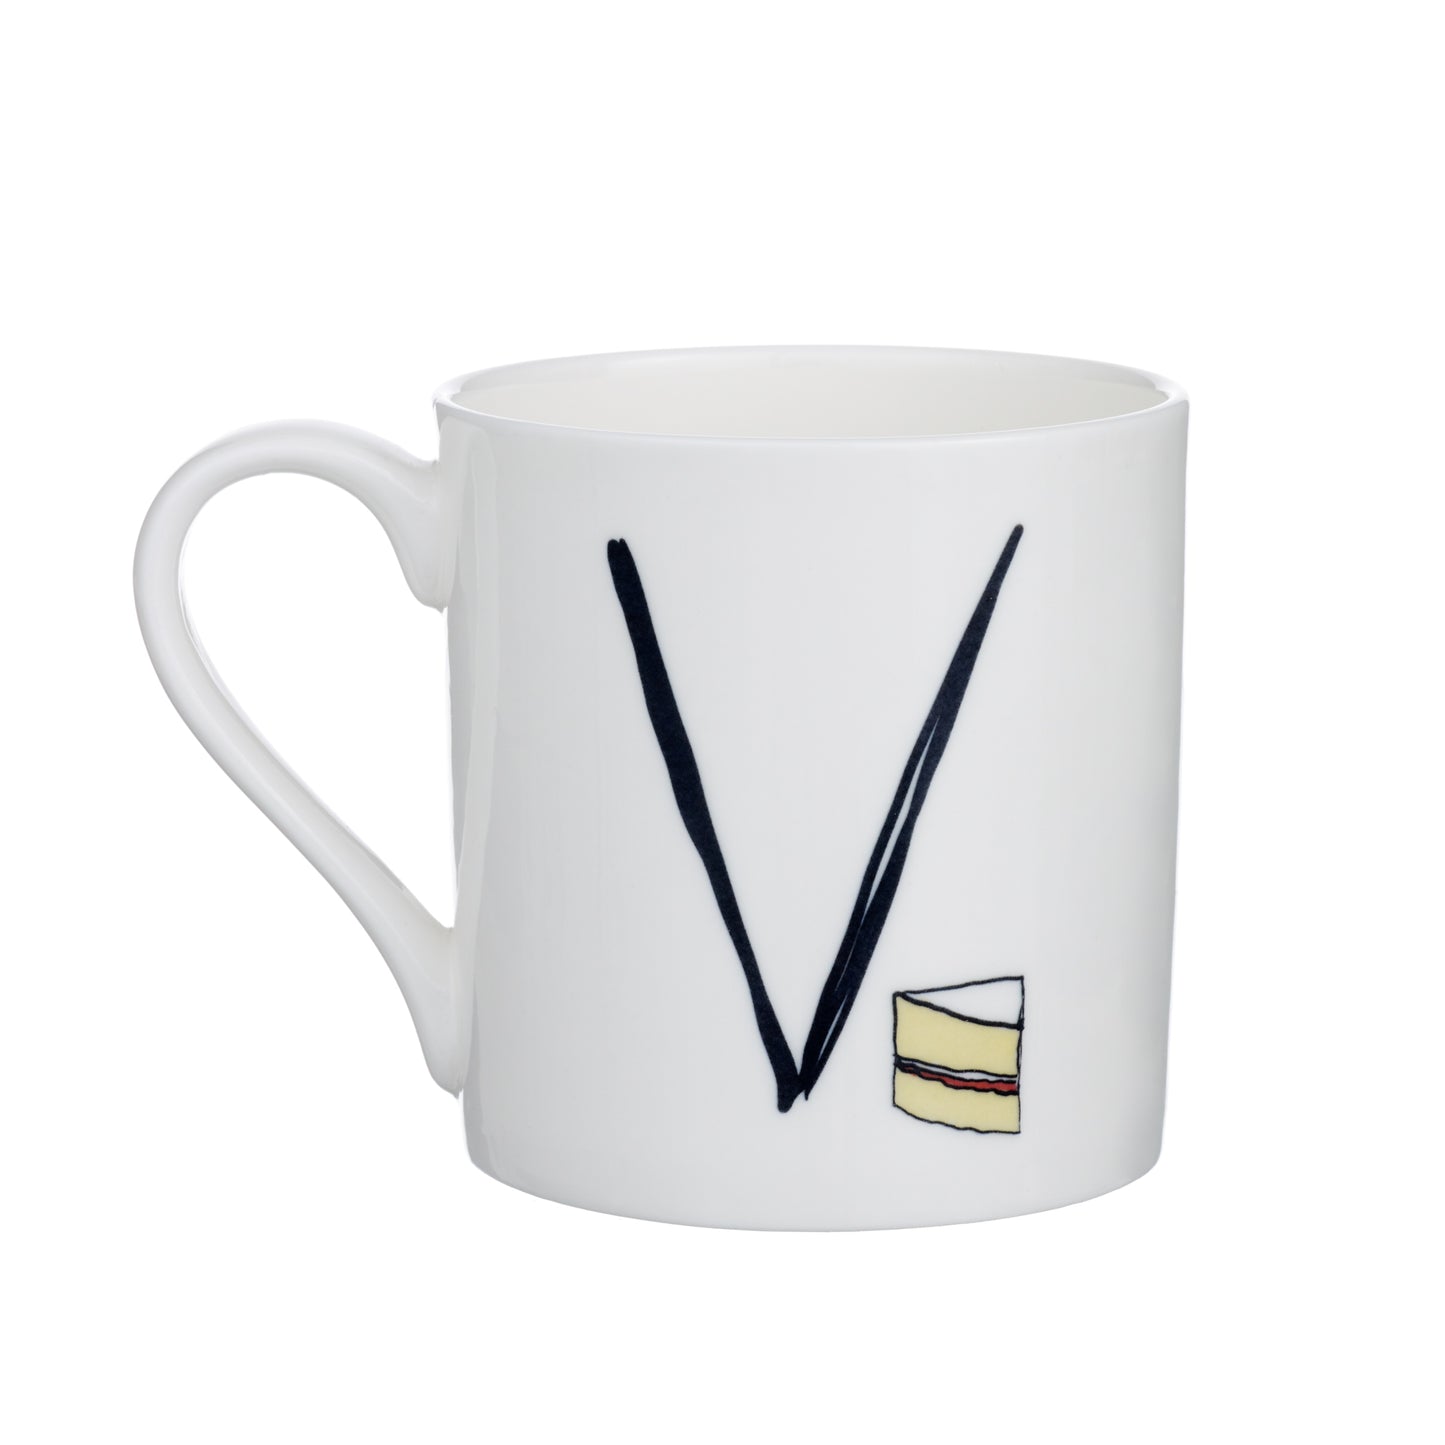 V - Alphabet of Snacking Animals Mug